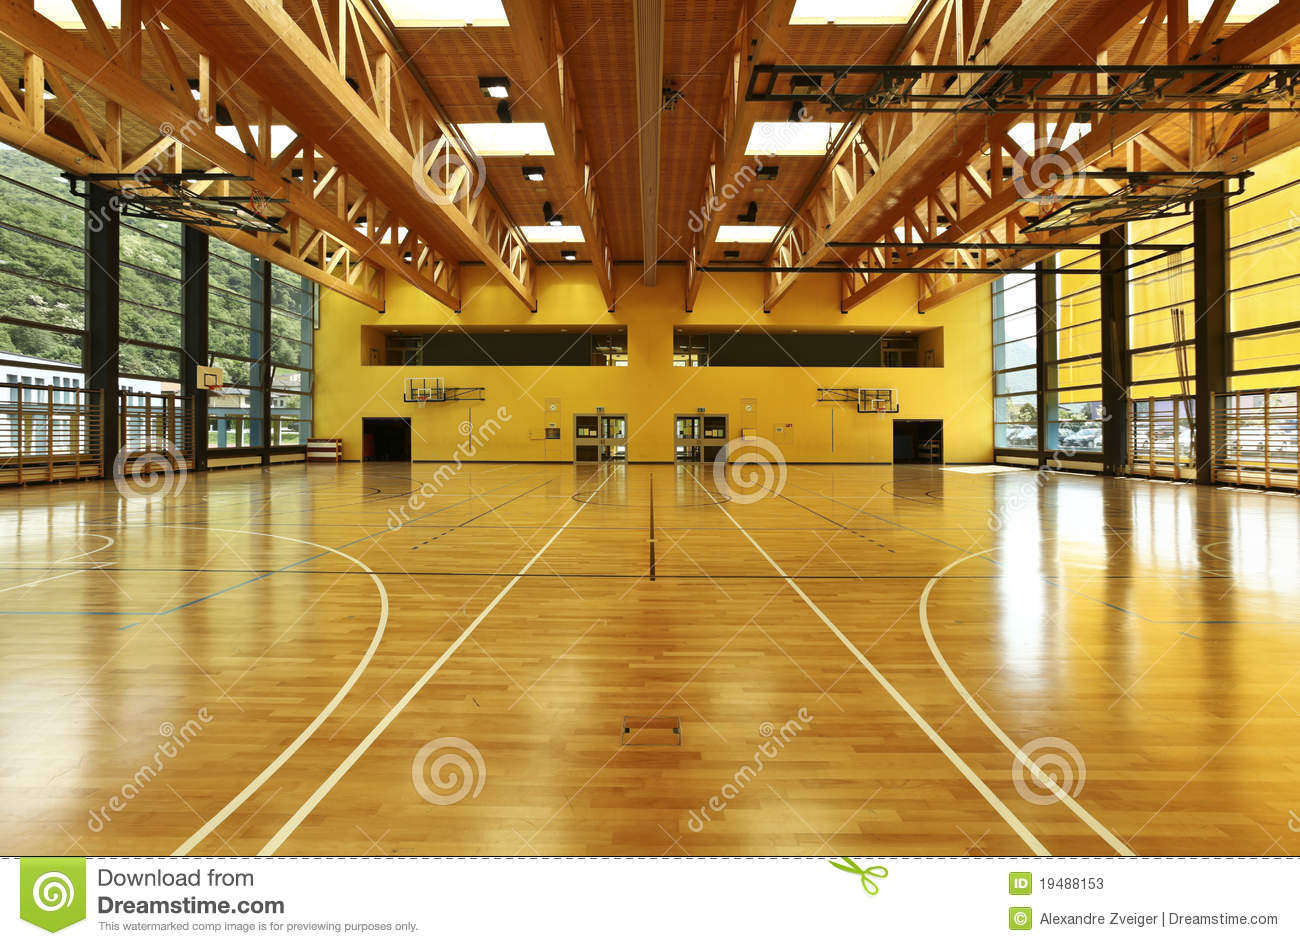 School Gymnasium Clipart Public School Interior Gym